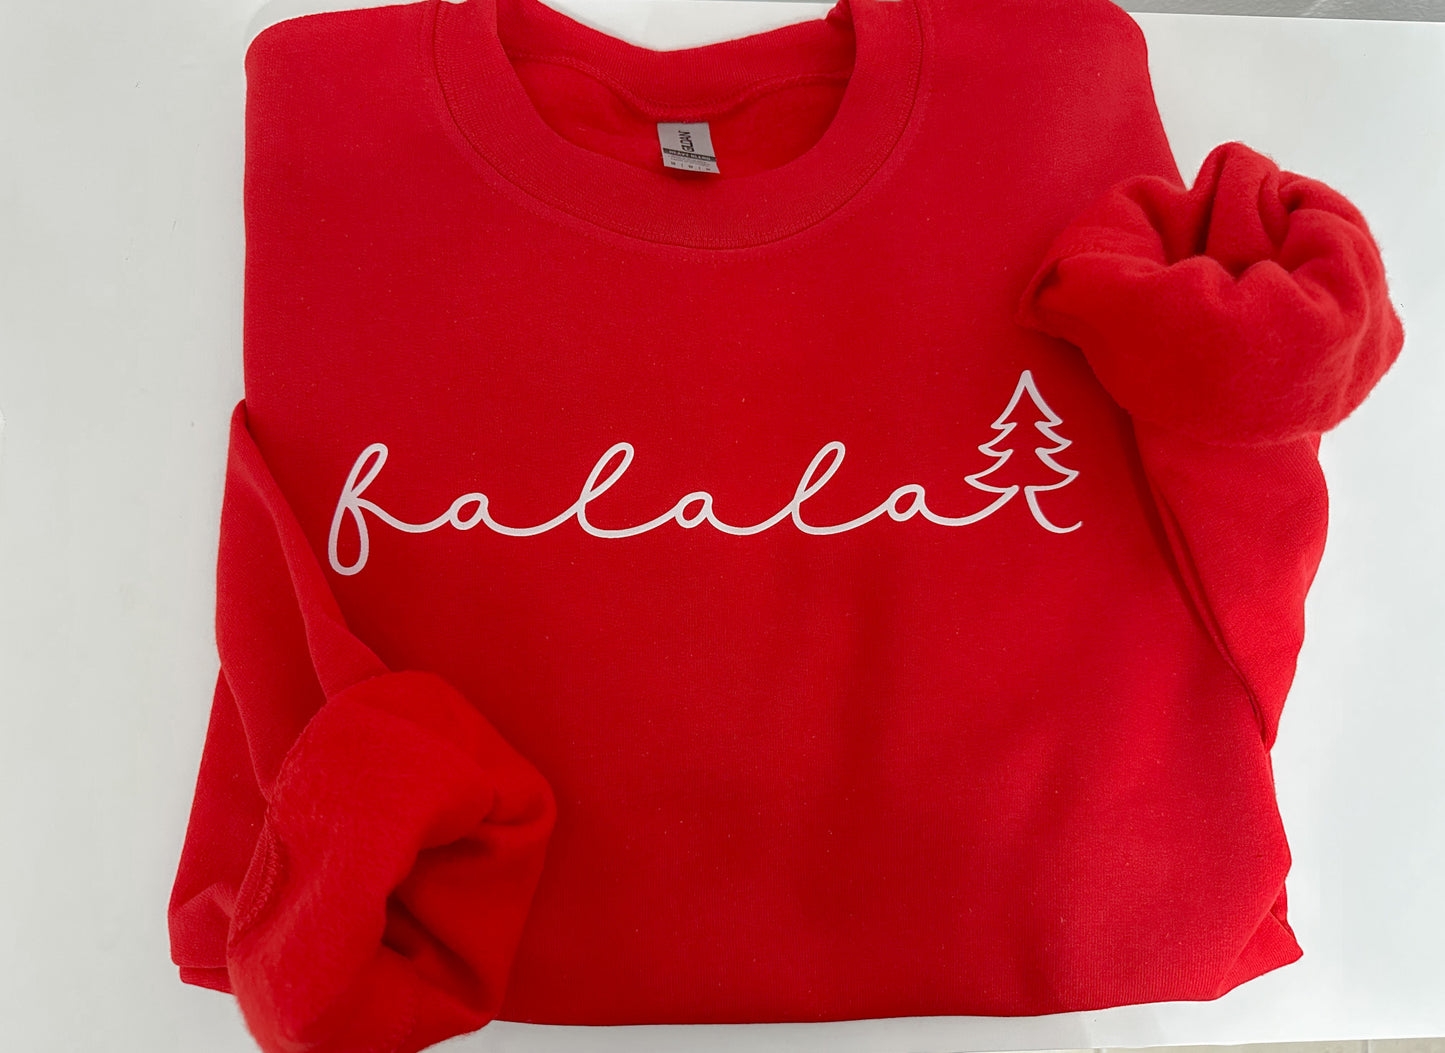 Falalala sweatshirt